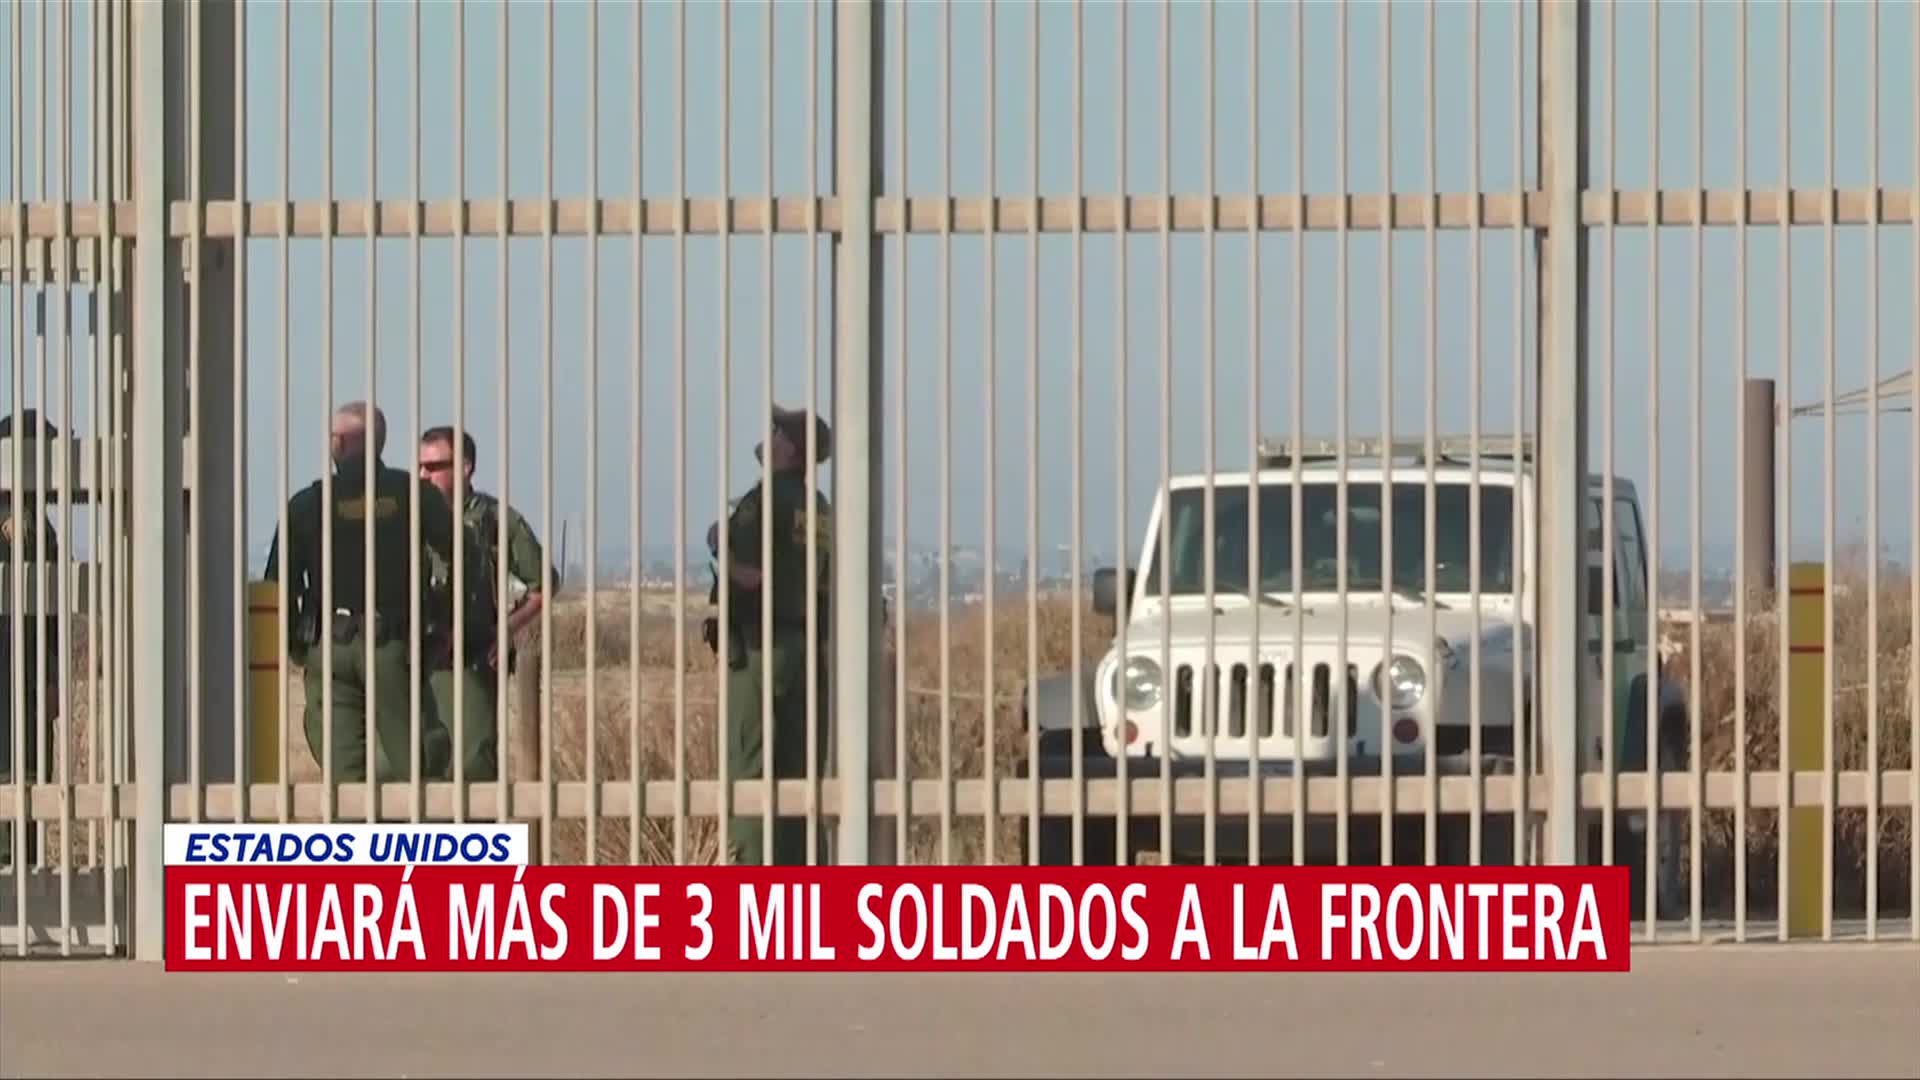 FOTO: Estados Unidos enviará más de 3 mil soldados a la frontera, 3 febrero 2019